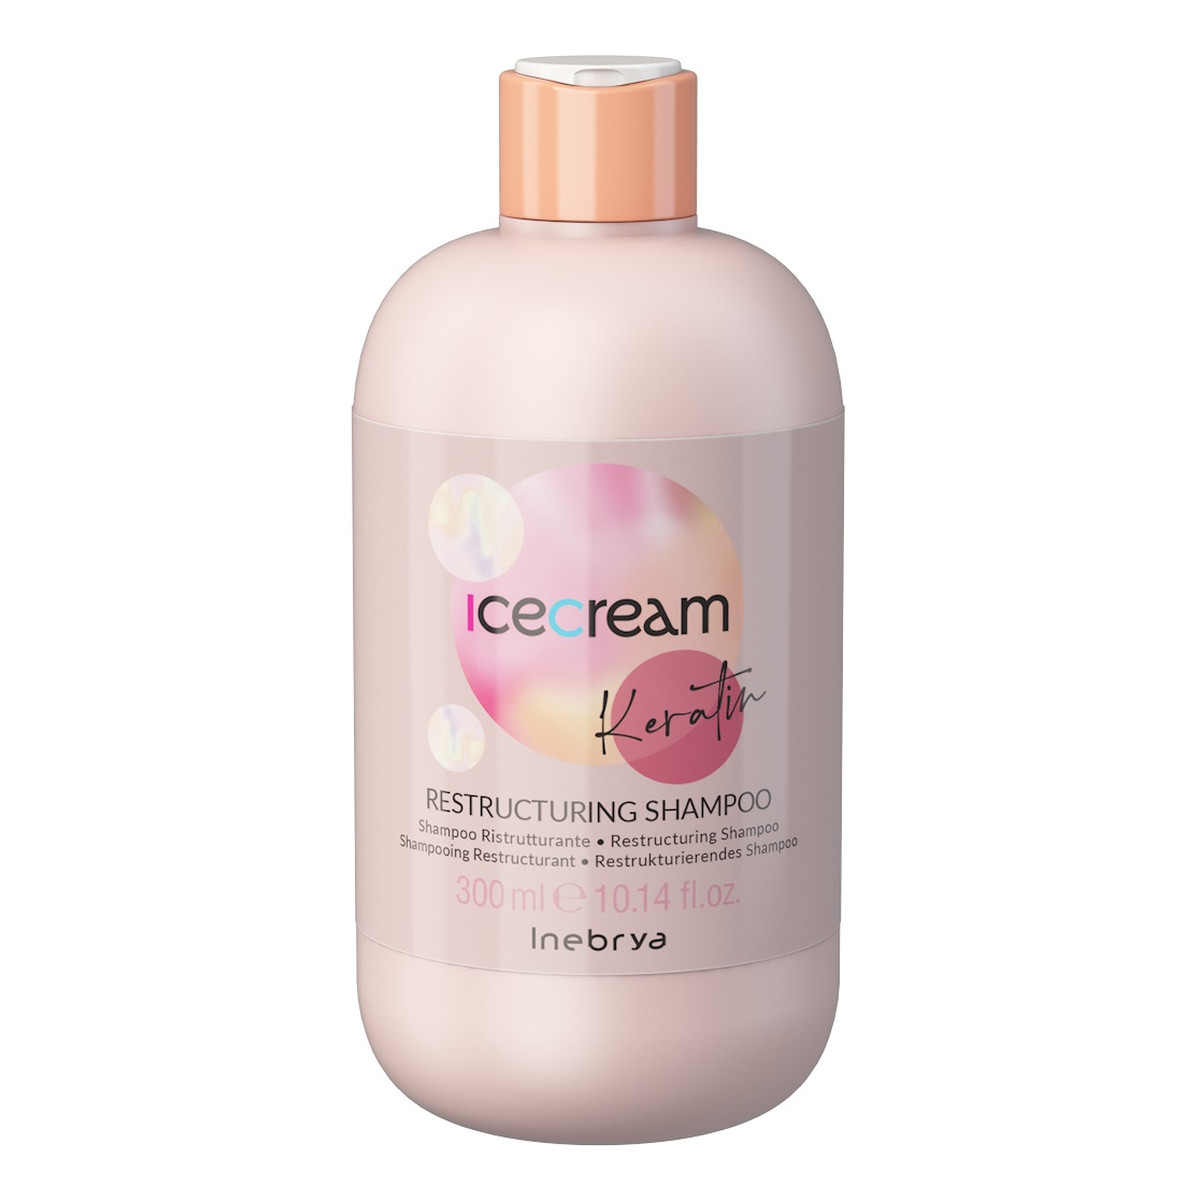 Inebrya Ice cream keratin restrukturyzujący szampon do włosów 300ml